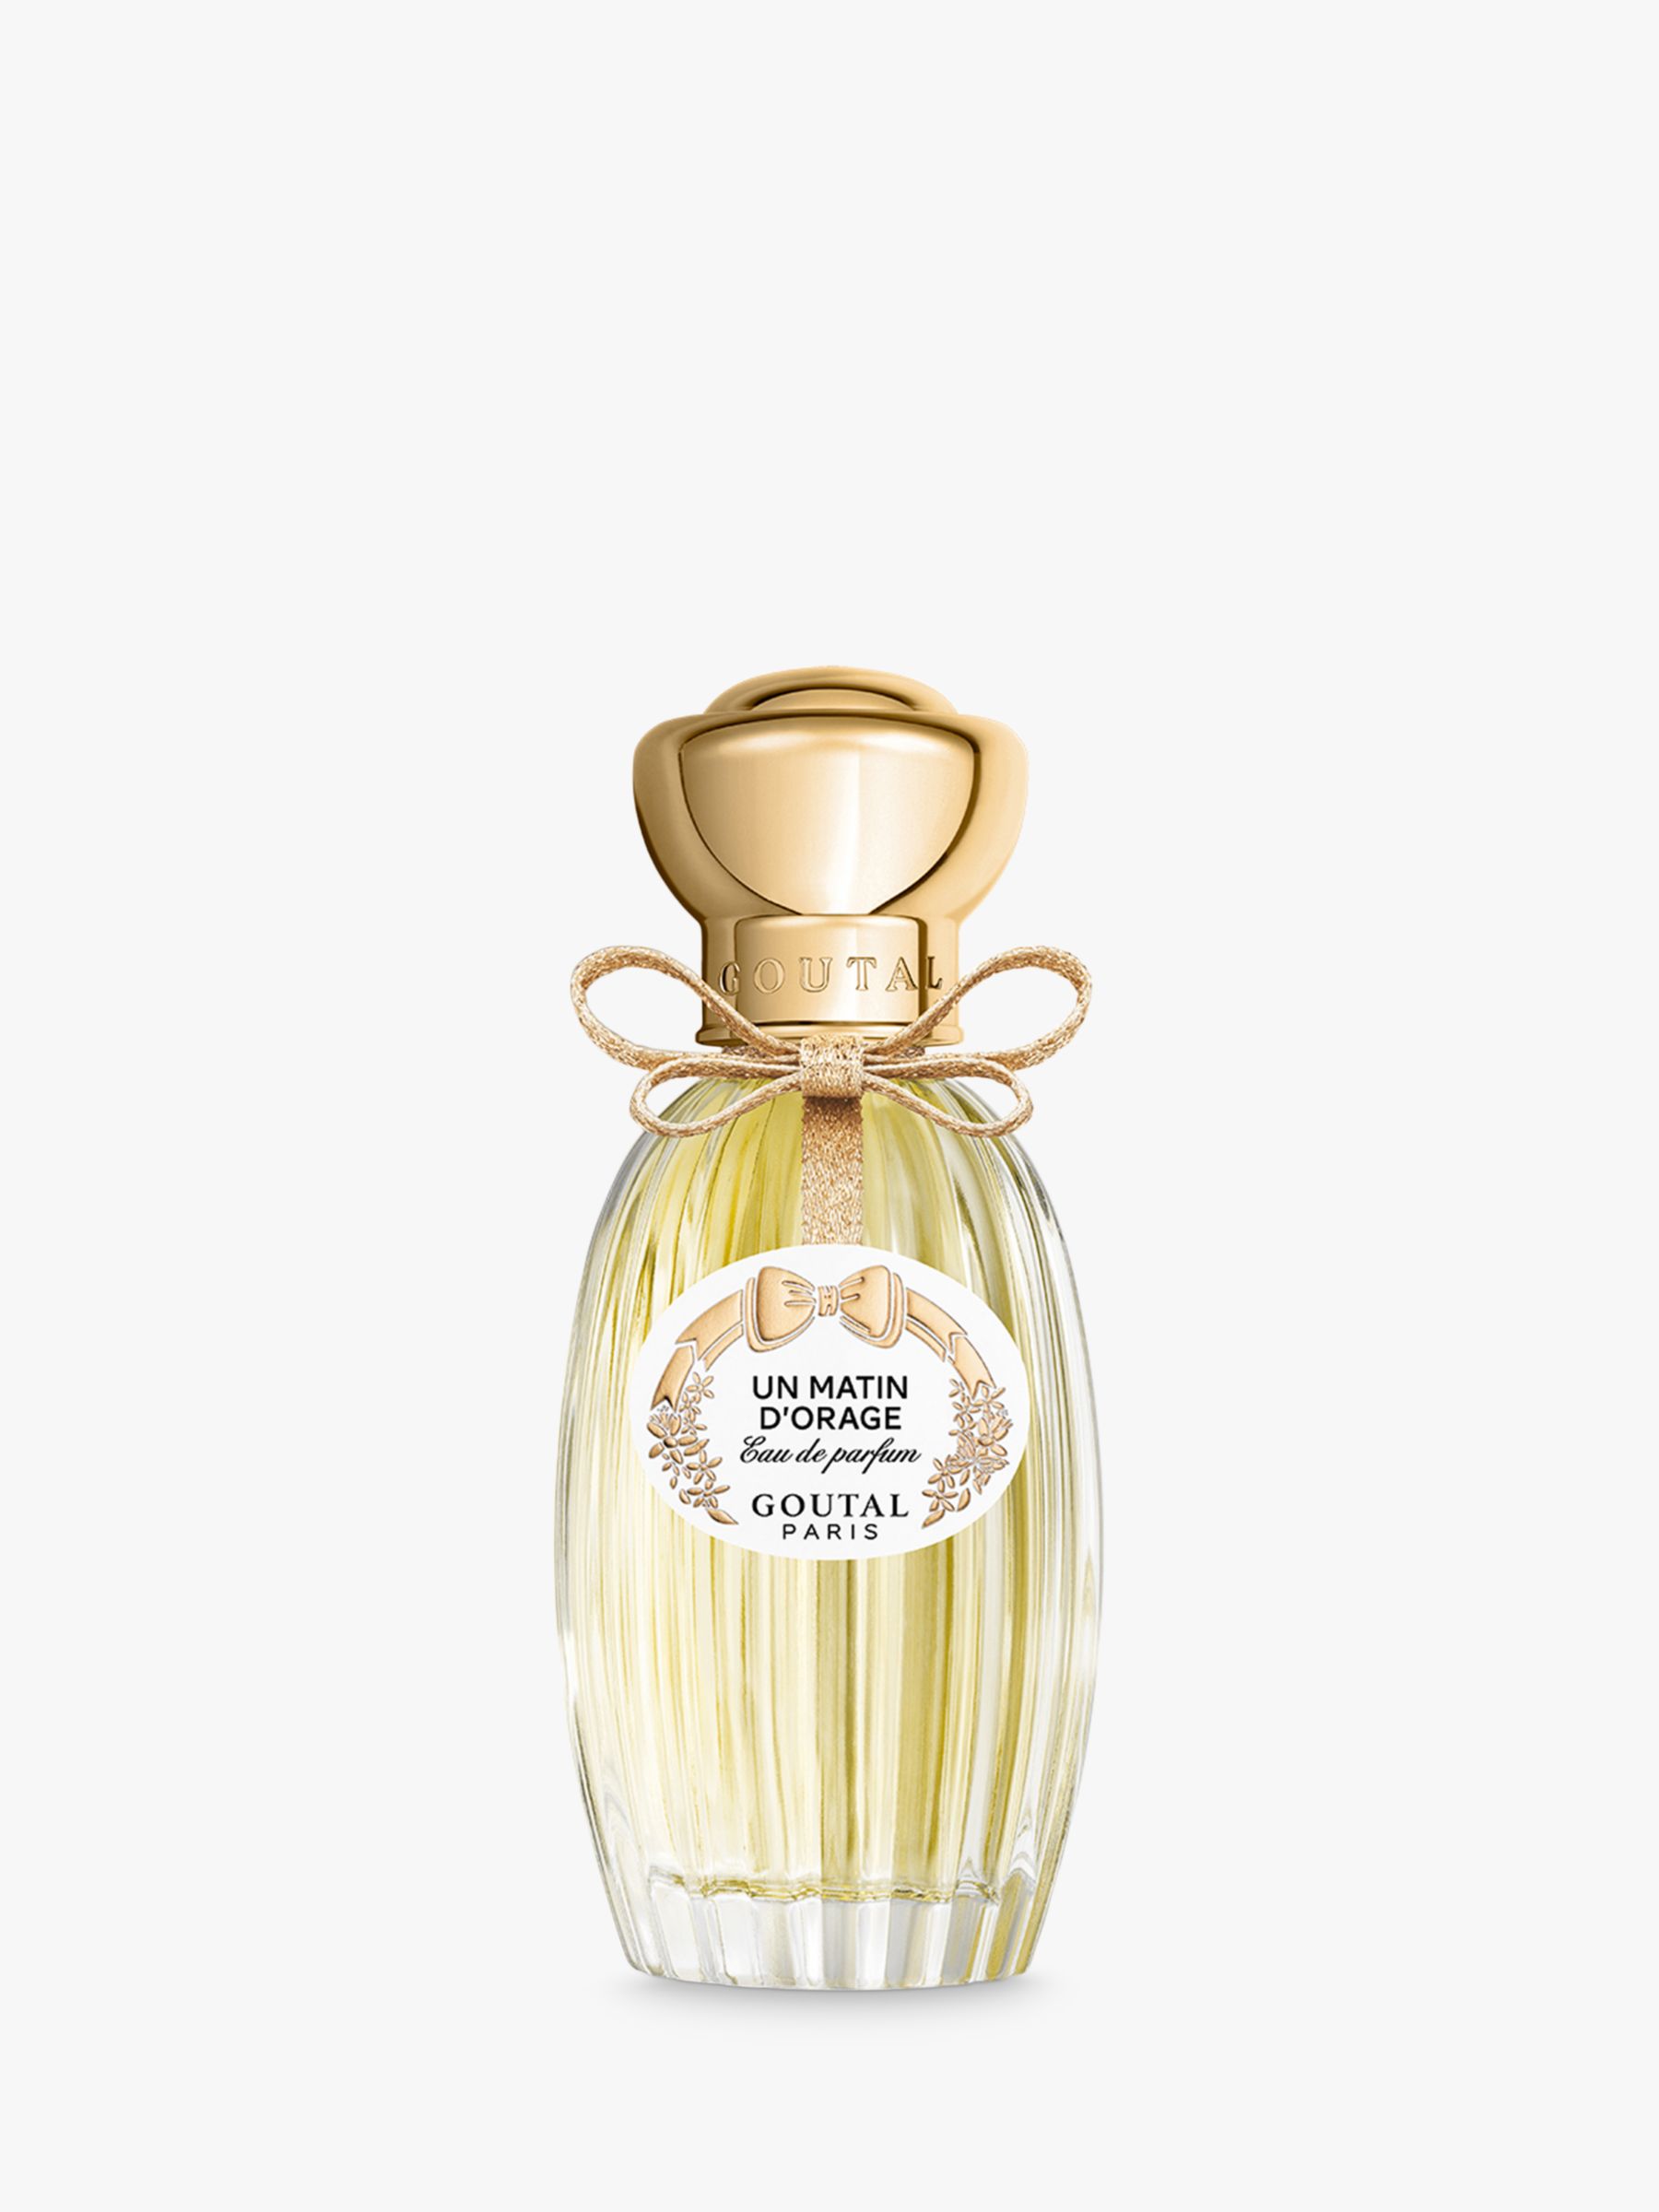 Goutal Un Matin d'Orage Eau de Parfum, 100ml at John Lewis & Partners